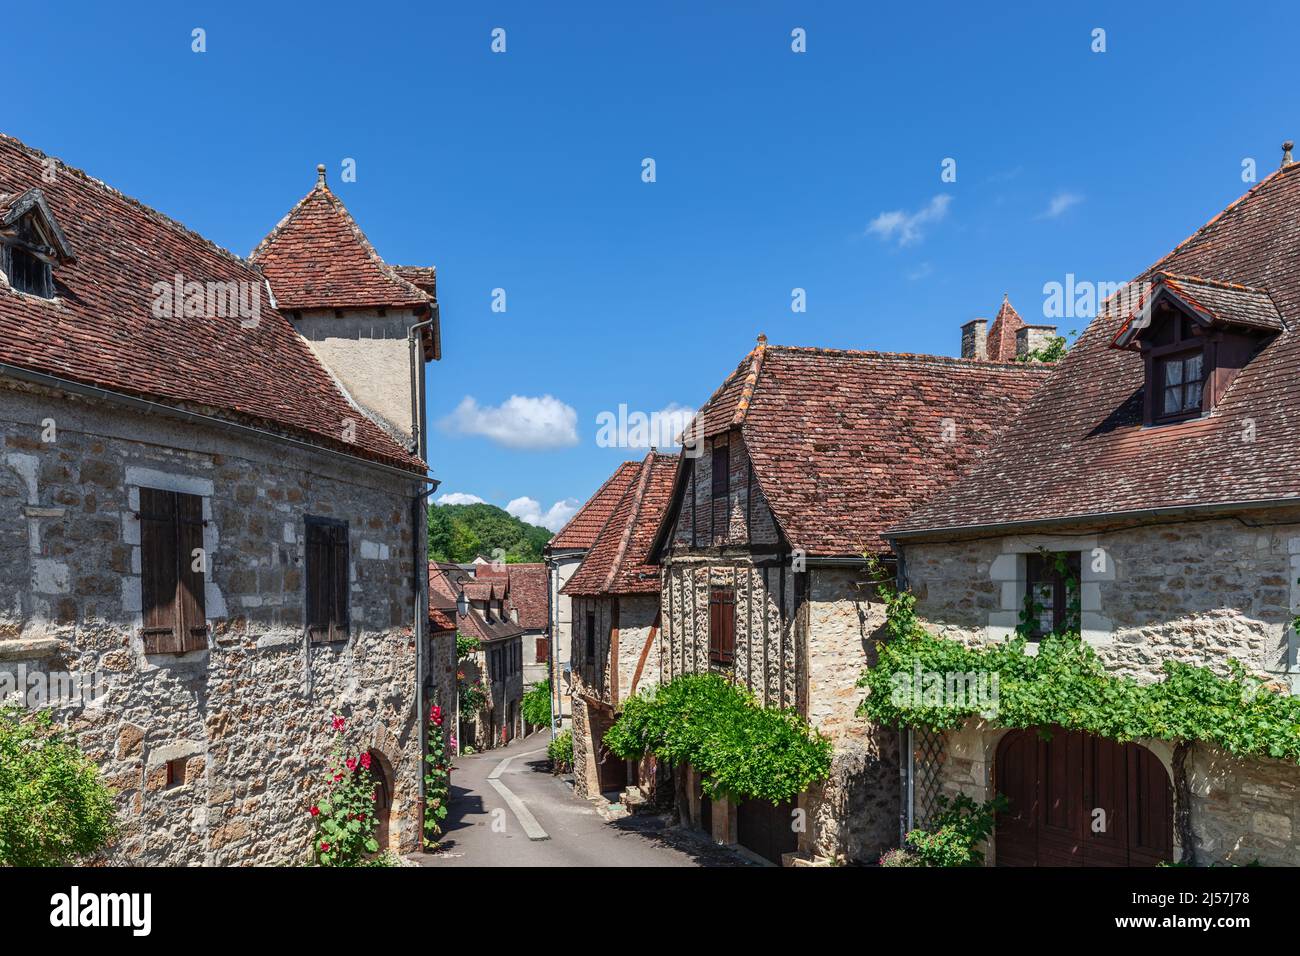 Ancienne rue étroite du village médiéval de Carennac, maisons en maçonnerie avec toits carrelés décorés de lierre et de plantes à fleurs. Lot, Quercy, France Banque D'Images